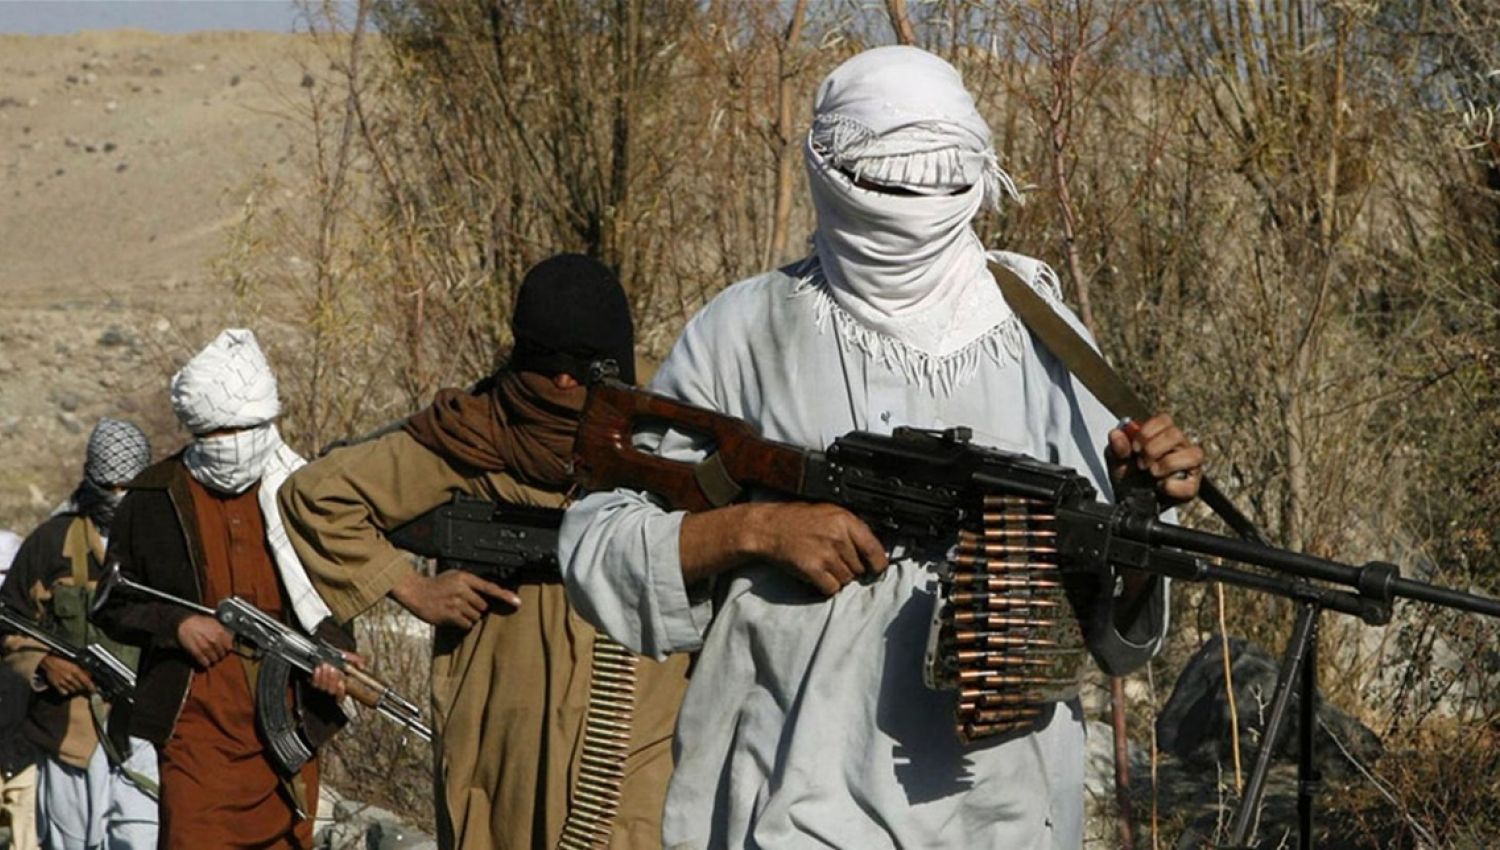 طالبان تتقدم وتحتل ثلث أفغانستان والحكومة إلى الانهيار